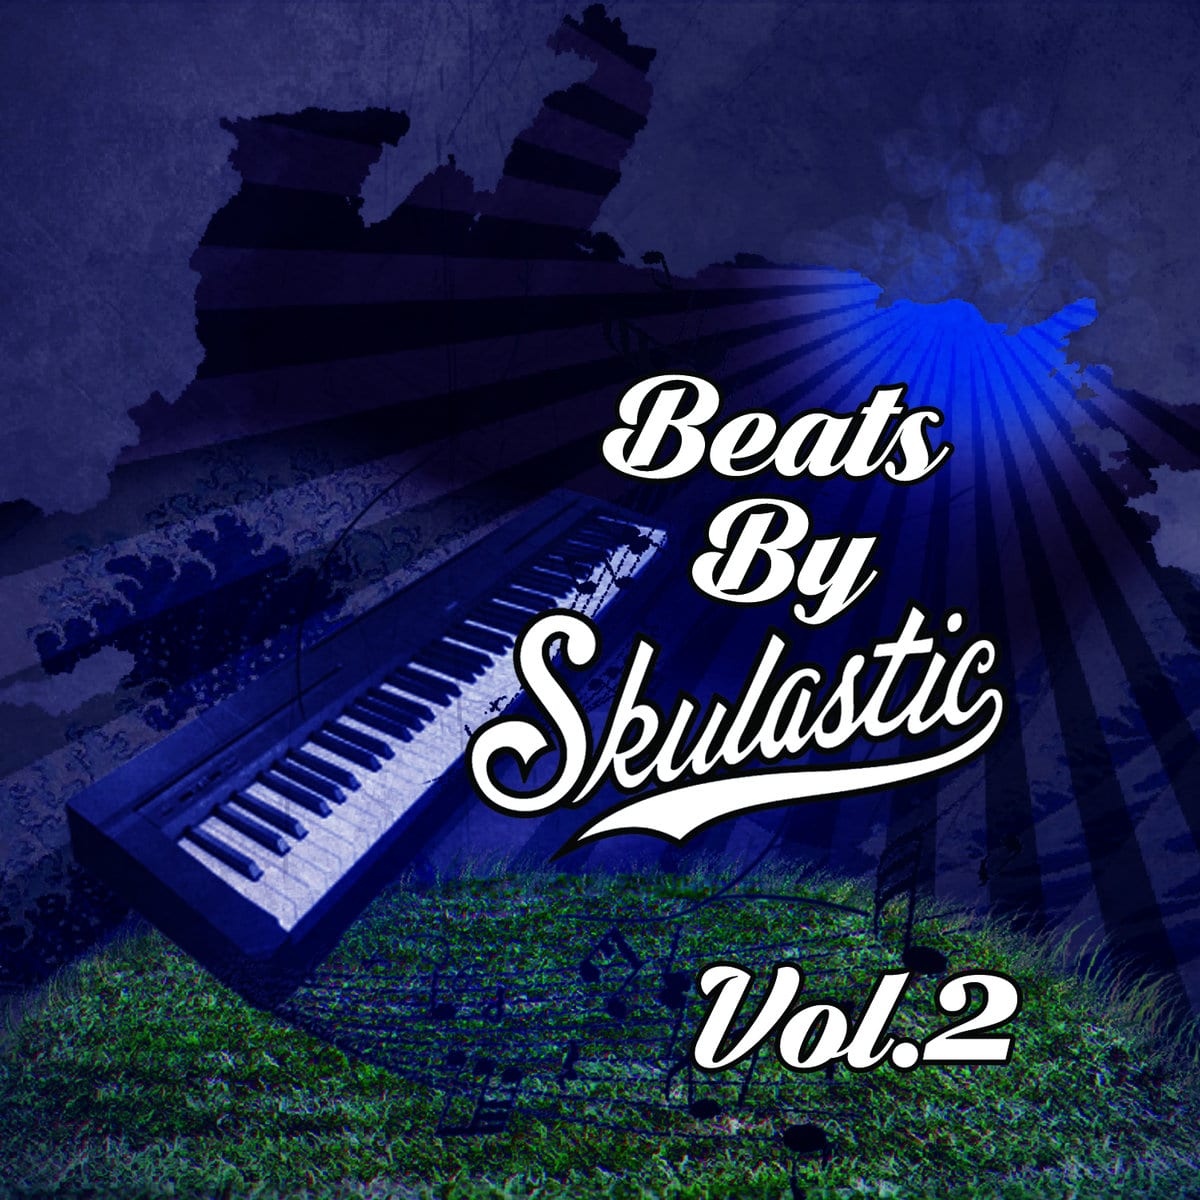 Skulastic - "Beats By Skulastic Vol. 2" (Release)